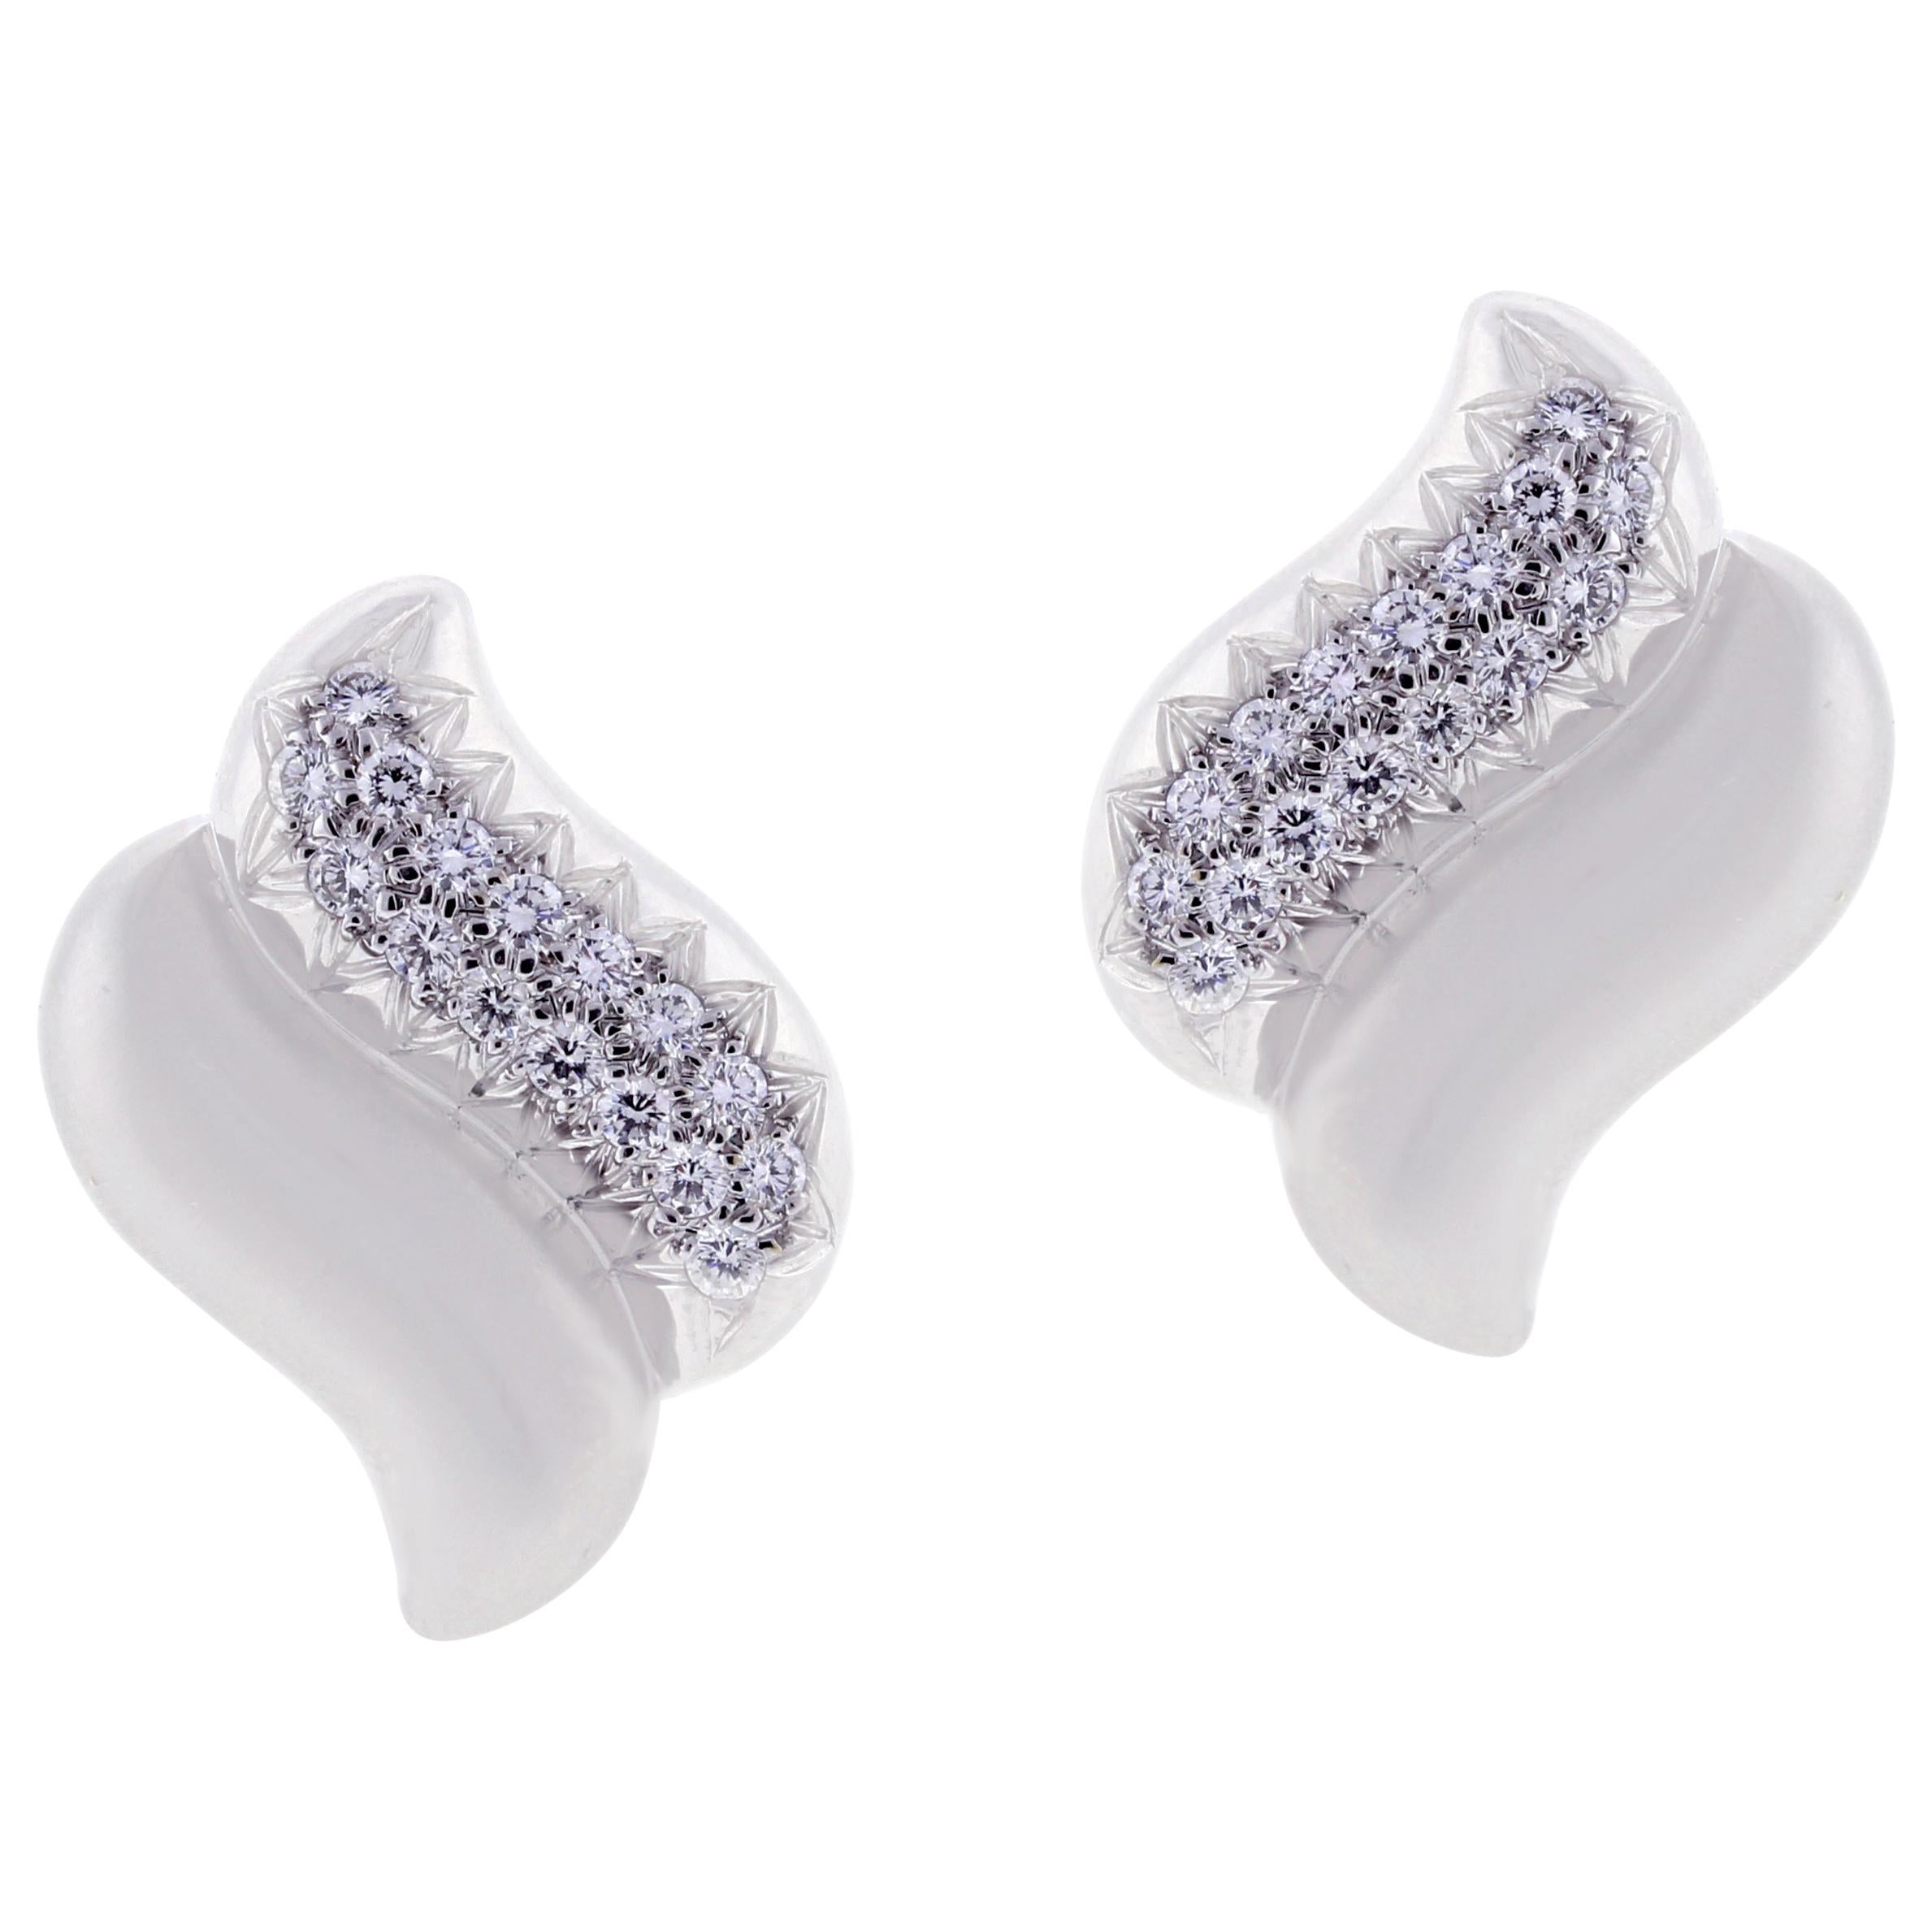 Marlene Stowe Double Wave Diamond Earrings